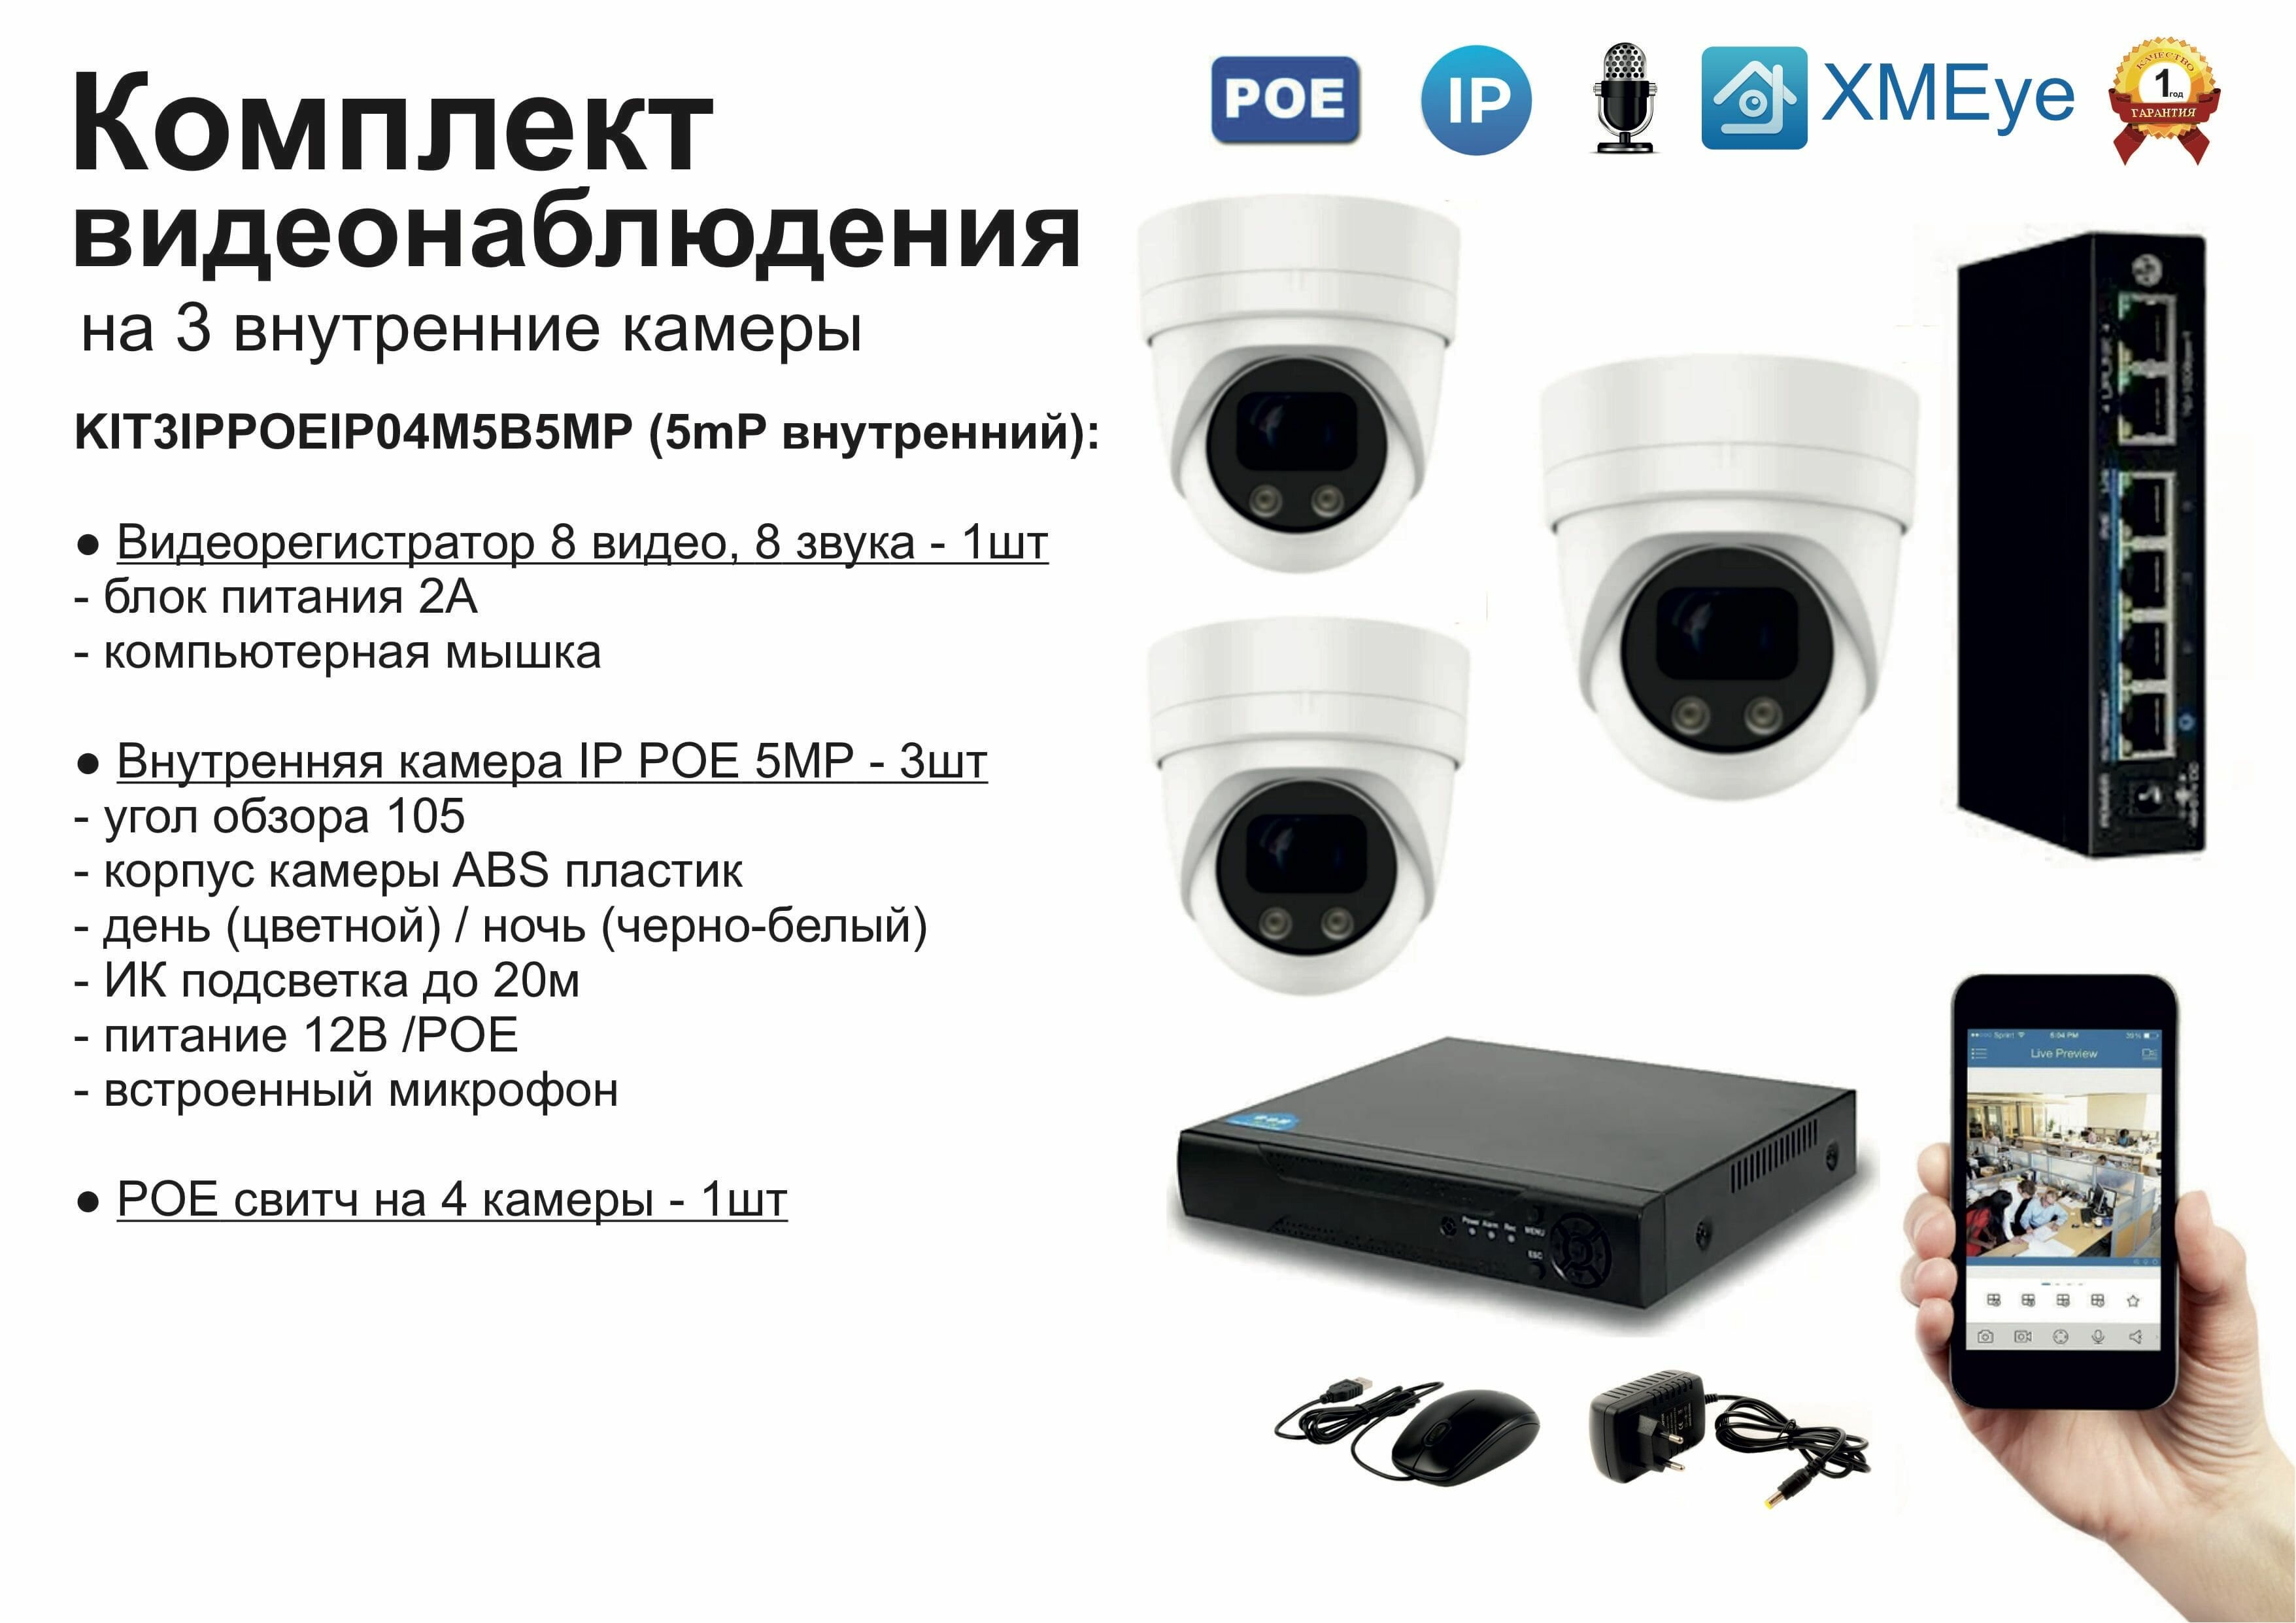 Комплект видеонаблюдения IP POE на 3 камеры. Внутренний, 5мП